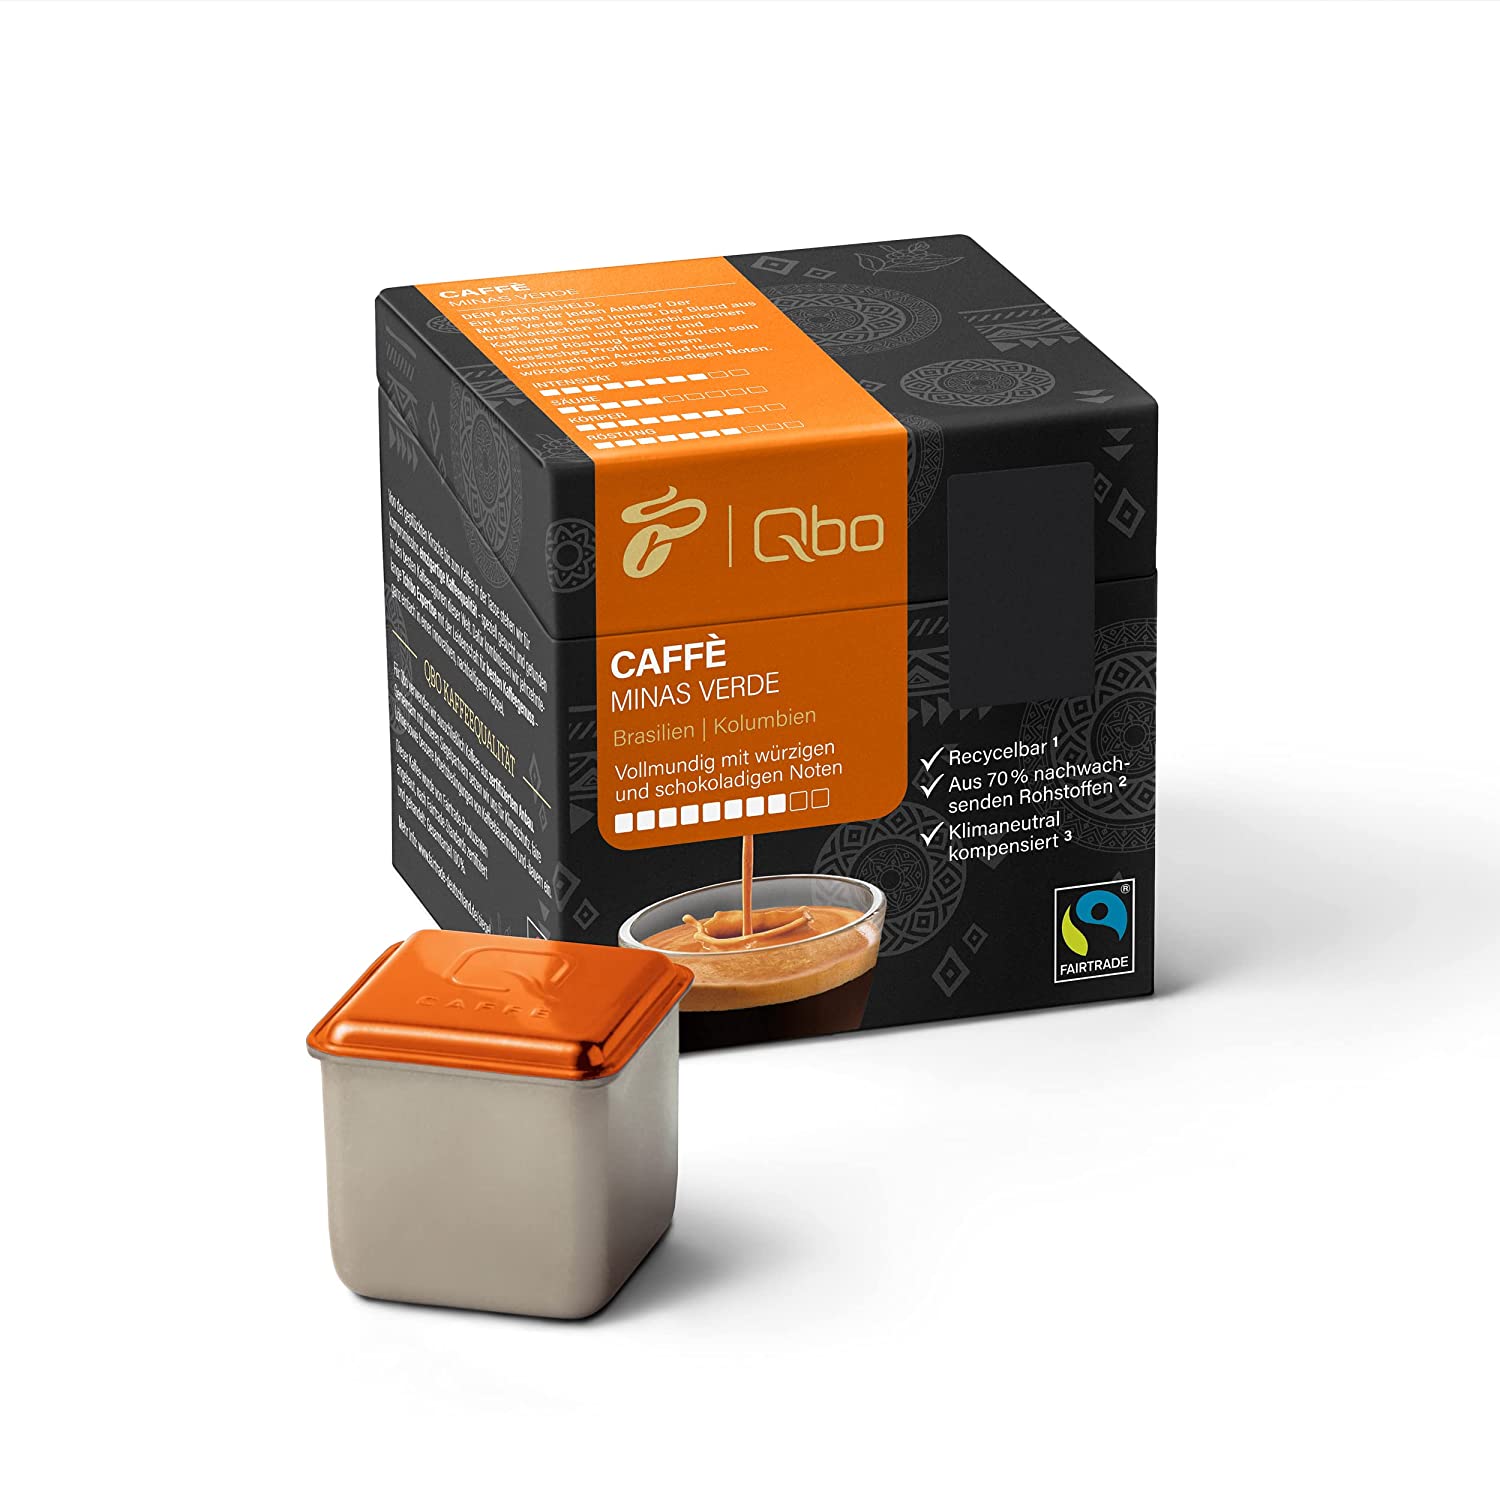 Tchibo Qbo Caffè Minas Verde Premium Kaffeekapseln, 144 Stück - 18x8 Kapseln (Caffè, Intensität 8/10, vollmundig und würzig), nachhaltig, aus 70% nachwachsenden Rohstoffen & klimaneutral kompensiert